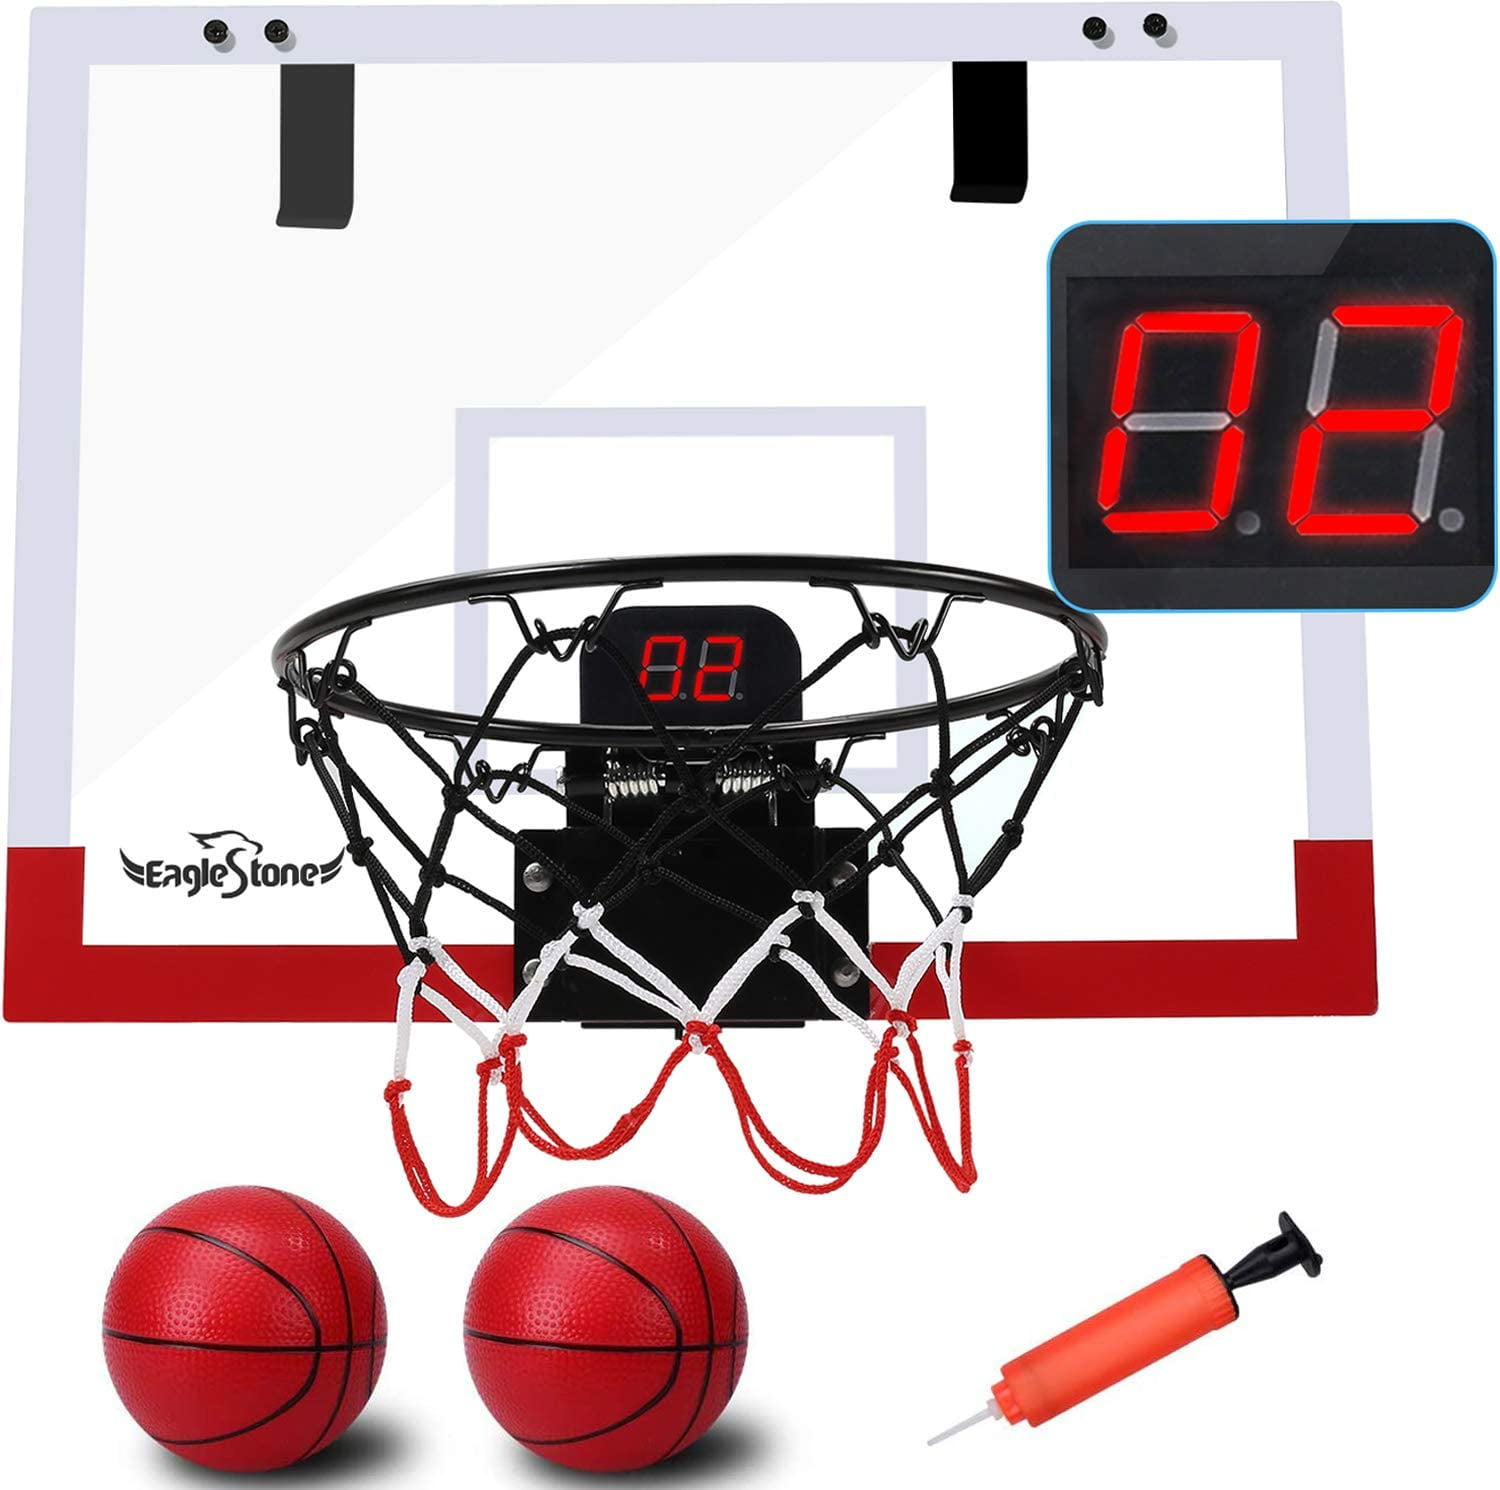 Basketball Mini Hoop for Over The Door Mounted Indoor Hoops Games Office Shan 